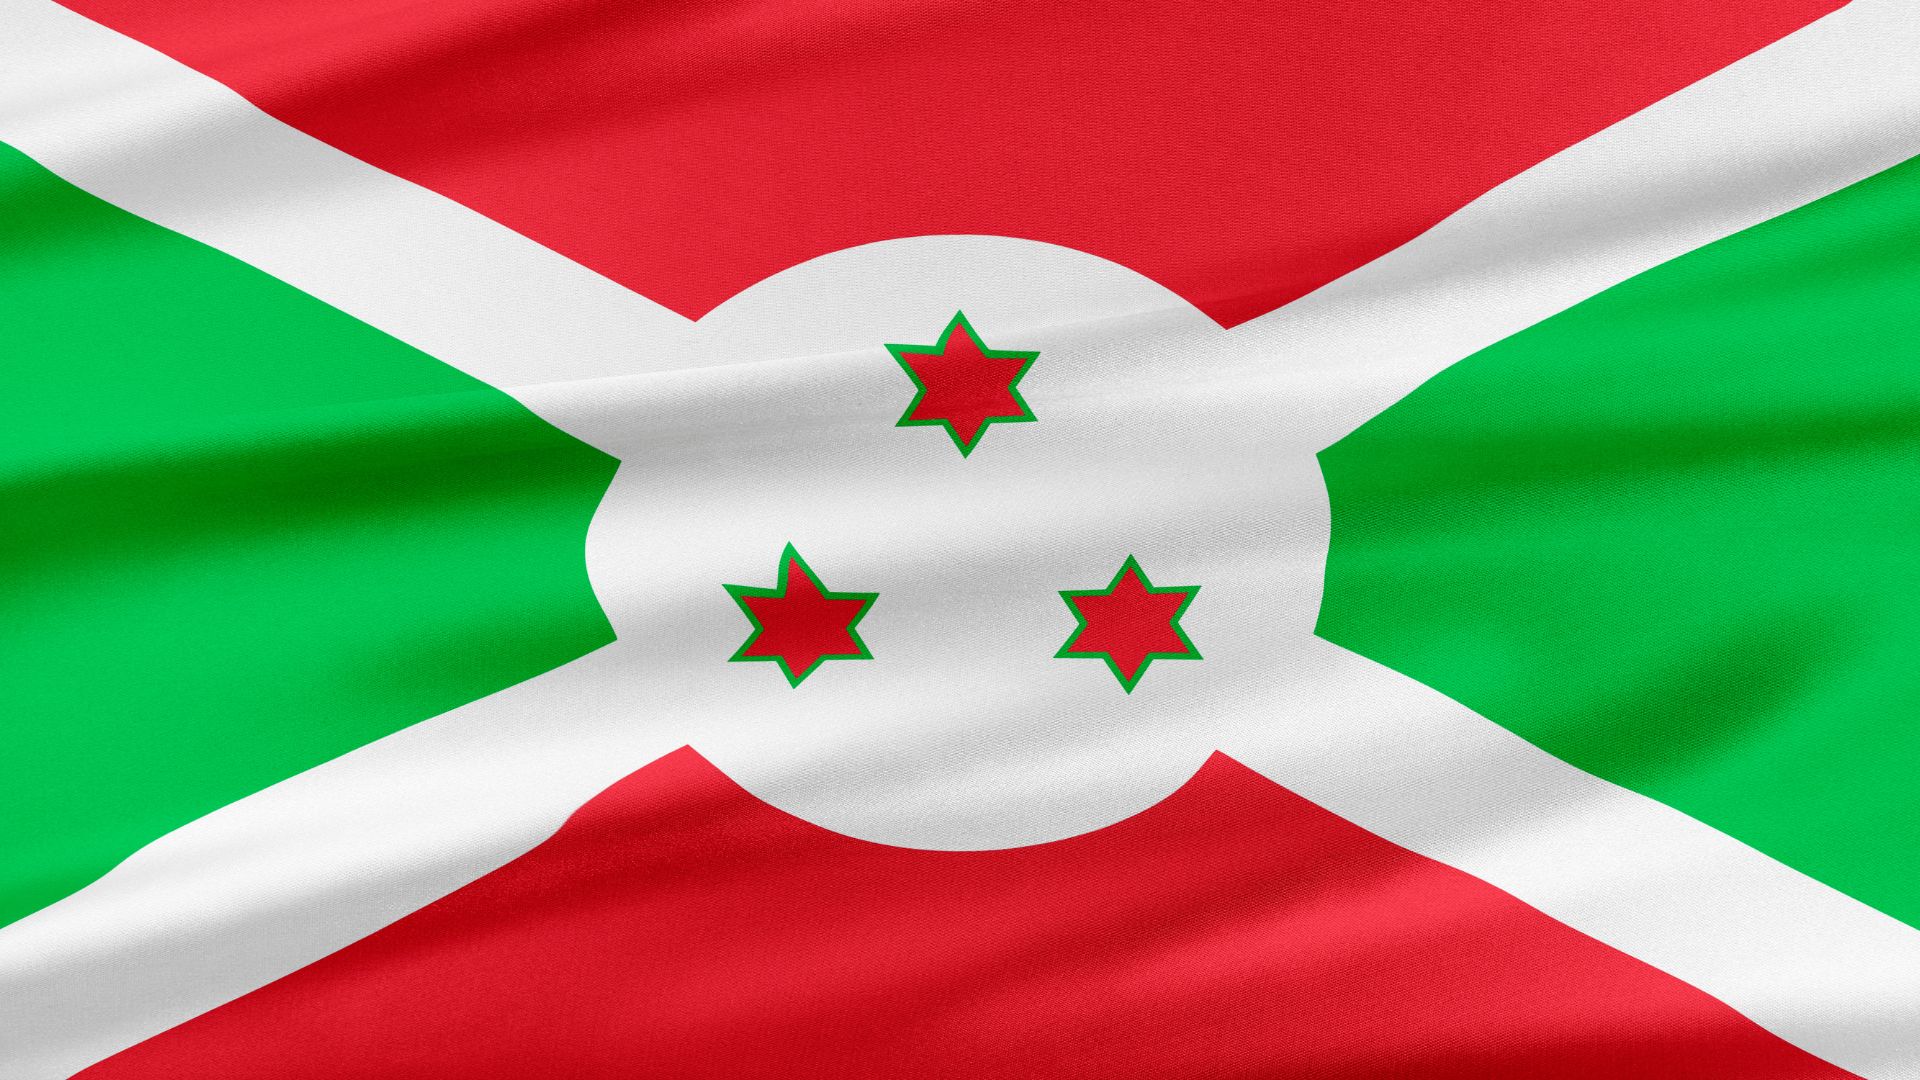 A bandeira é constituída por uma cruz do Santo André branca, ficando assim a bandeira dividida em quatro áreas.  A inferior e superior são vermelhas e a direita e esquerda verdes.